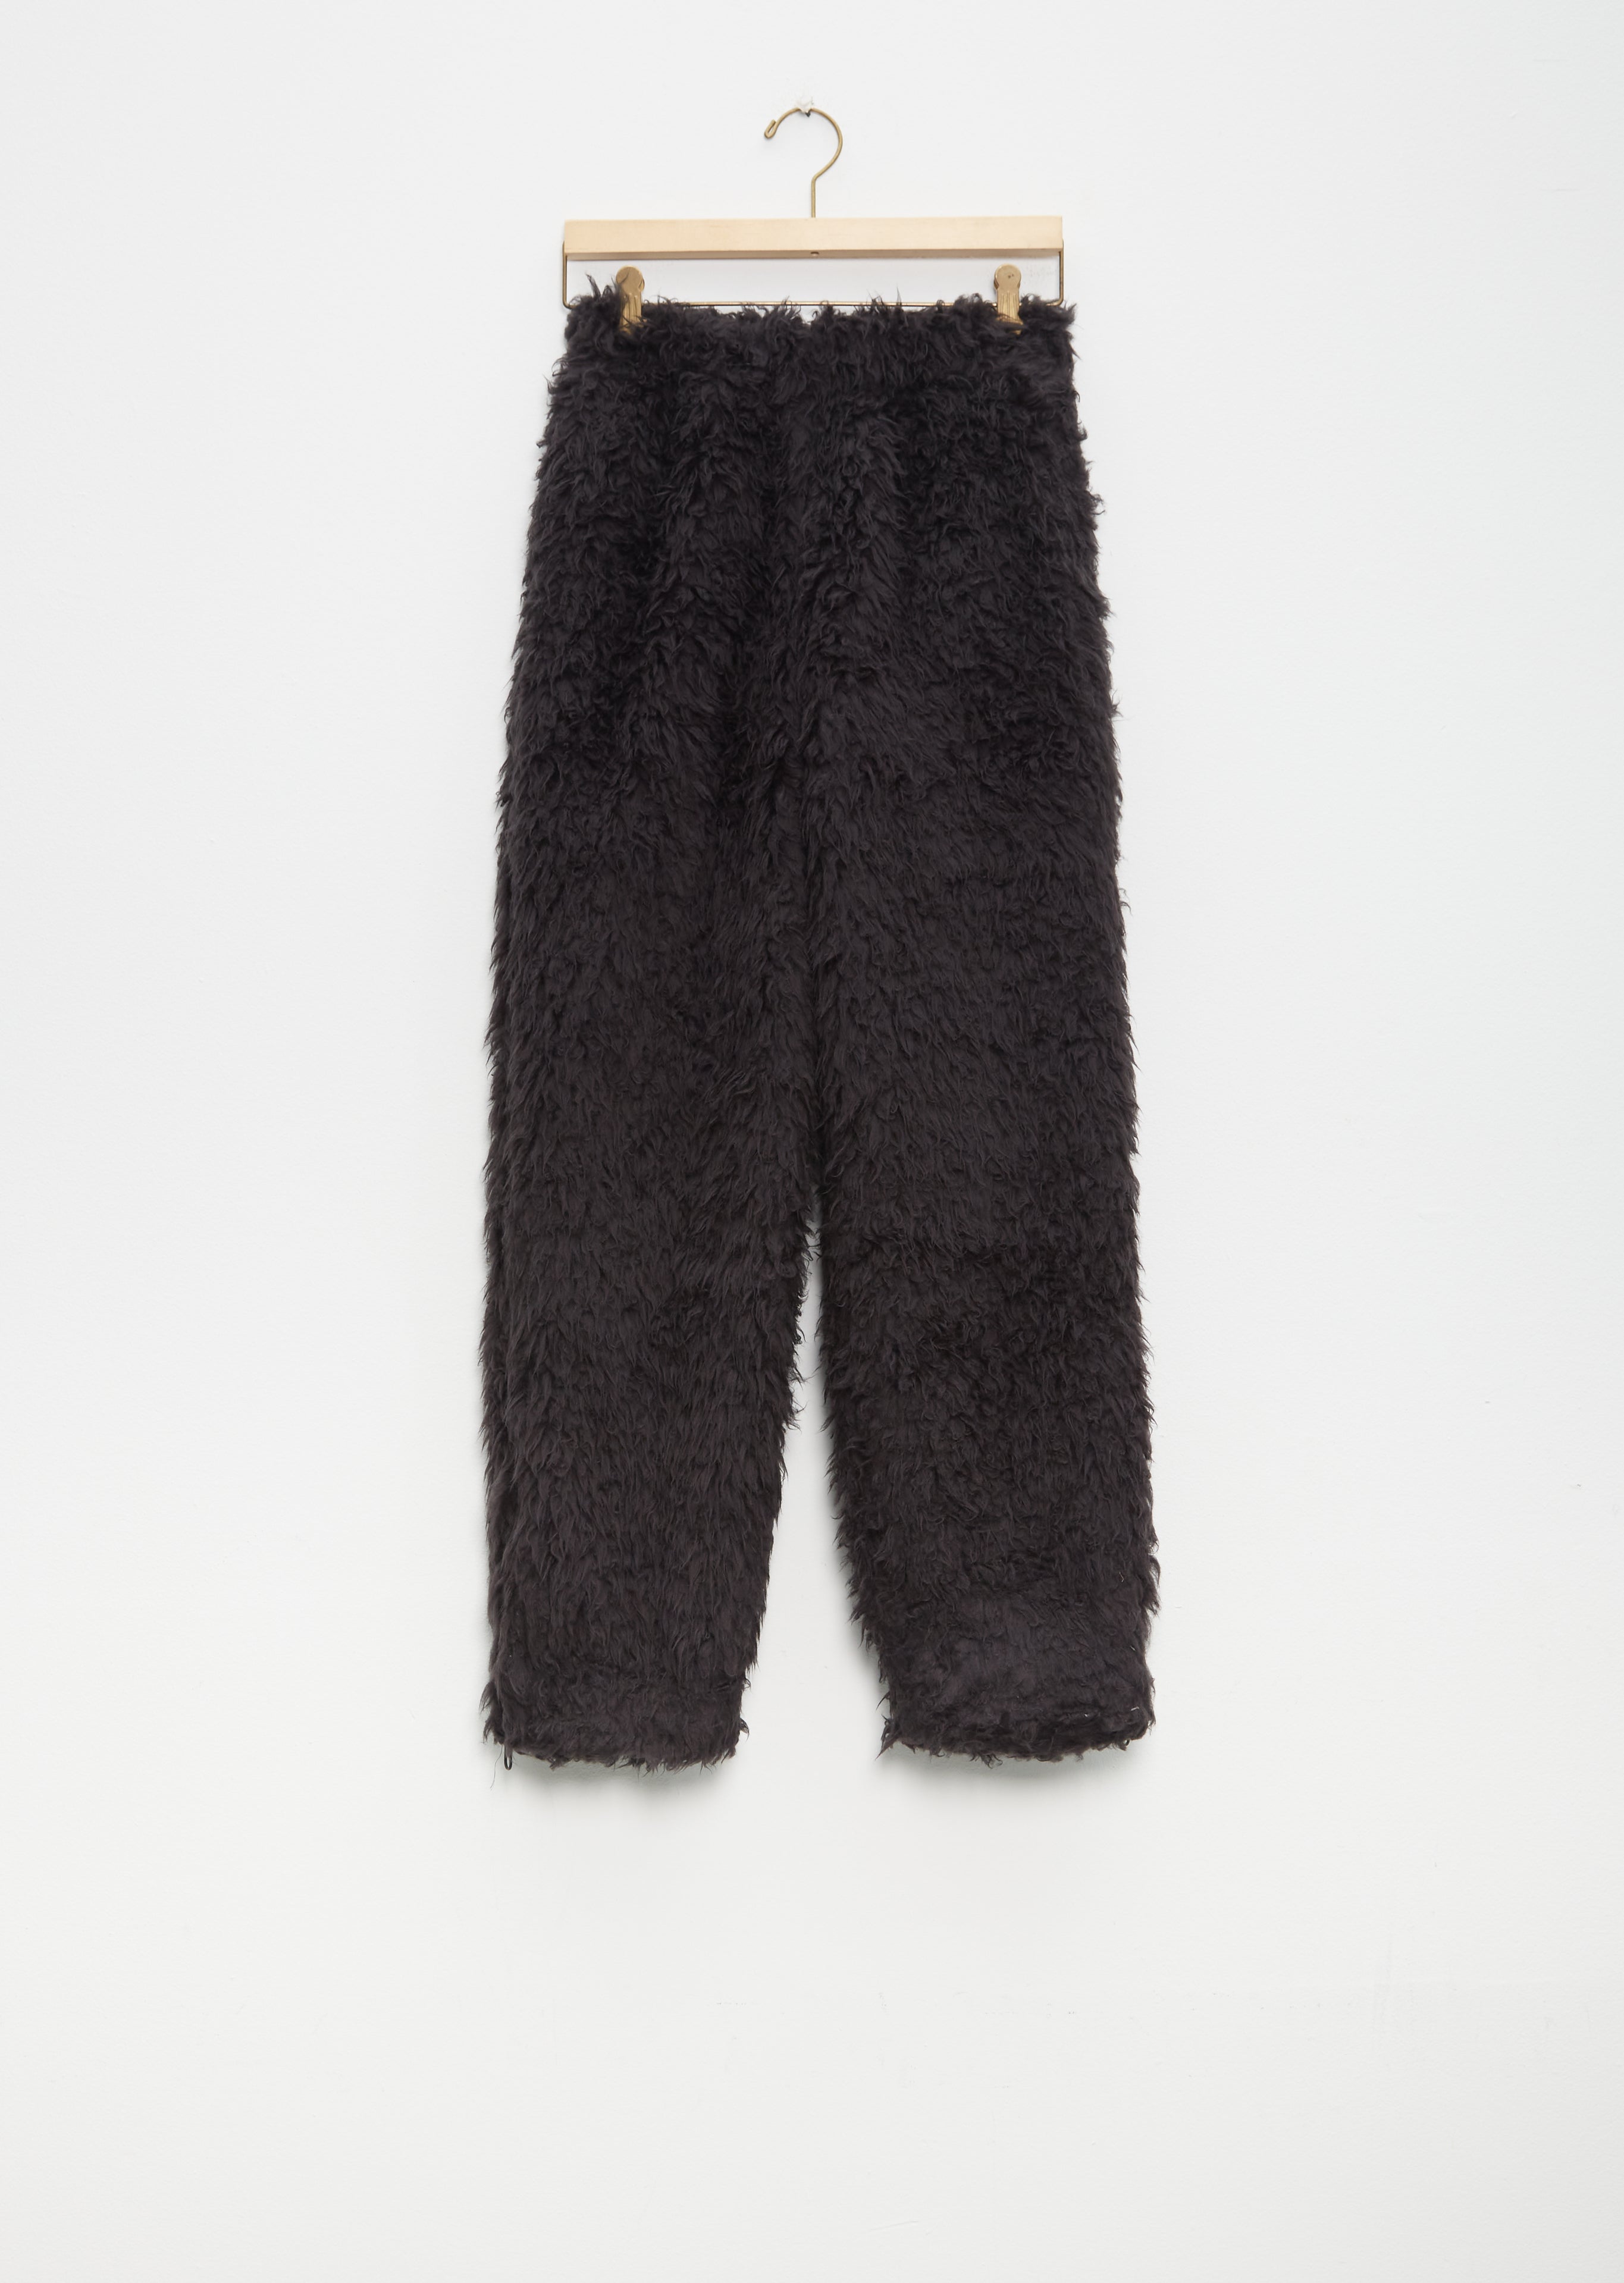 Faux Fur Cropped Top & Elasticized Pants – CHIVANE